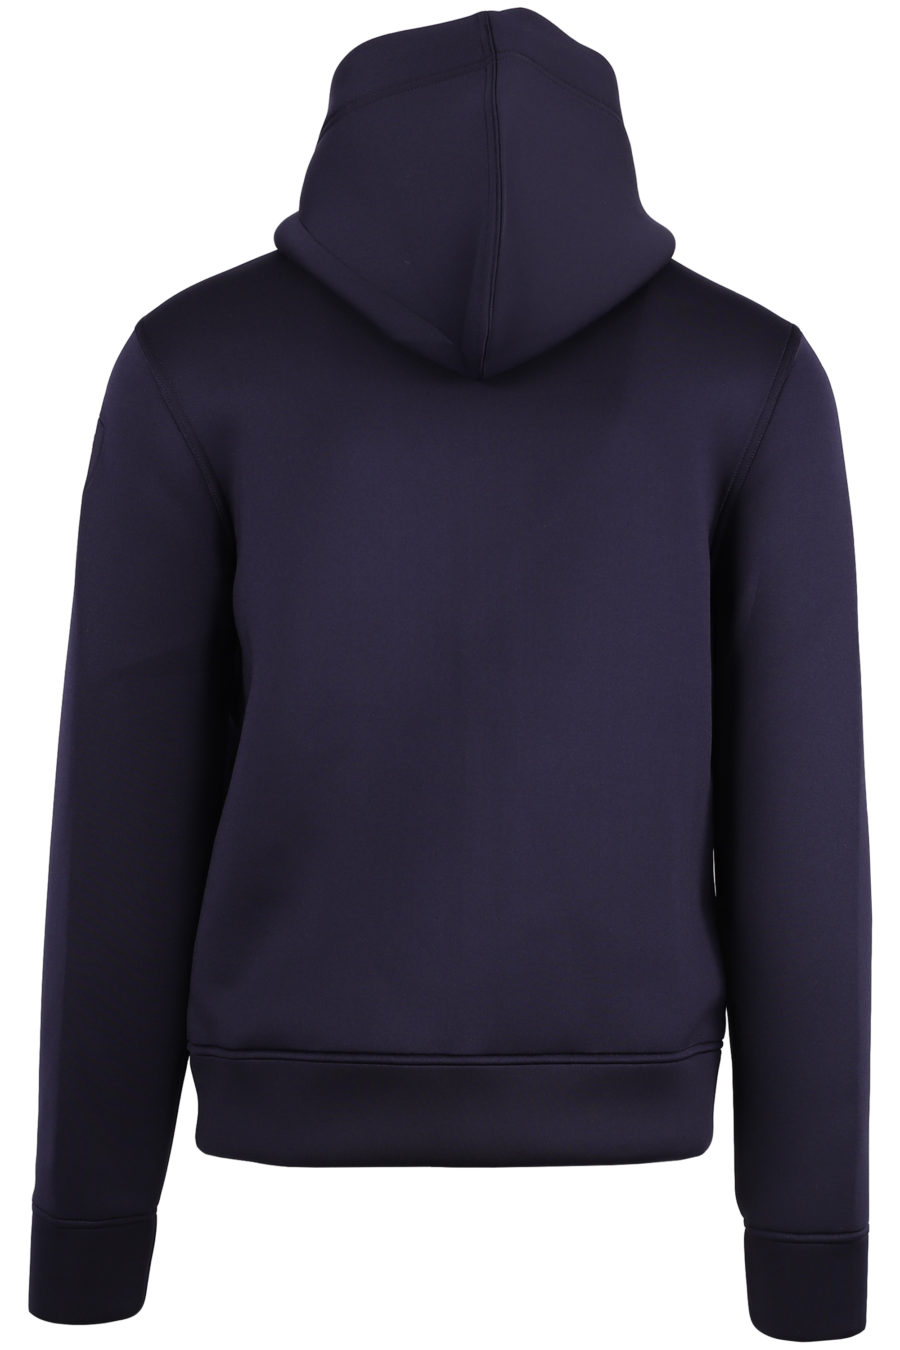 Blue neoprene sweatshirt with hood and zip - IMG 1244